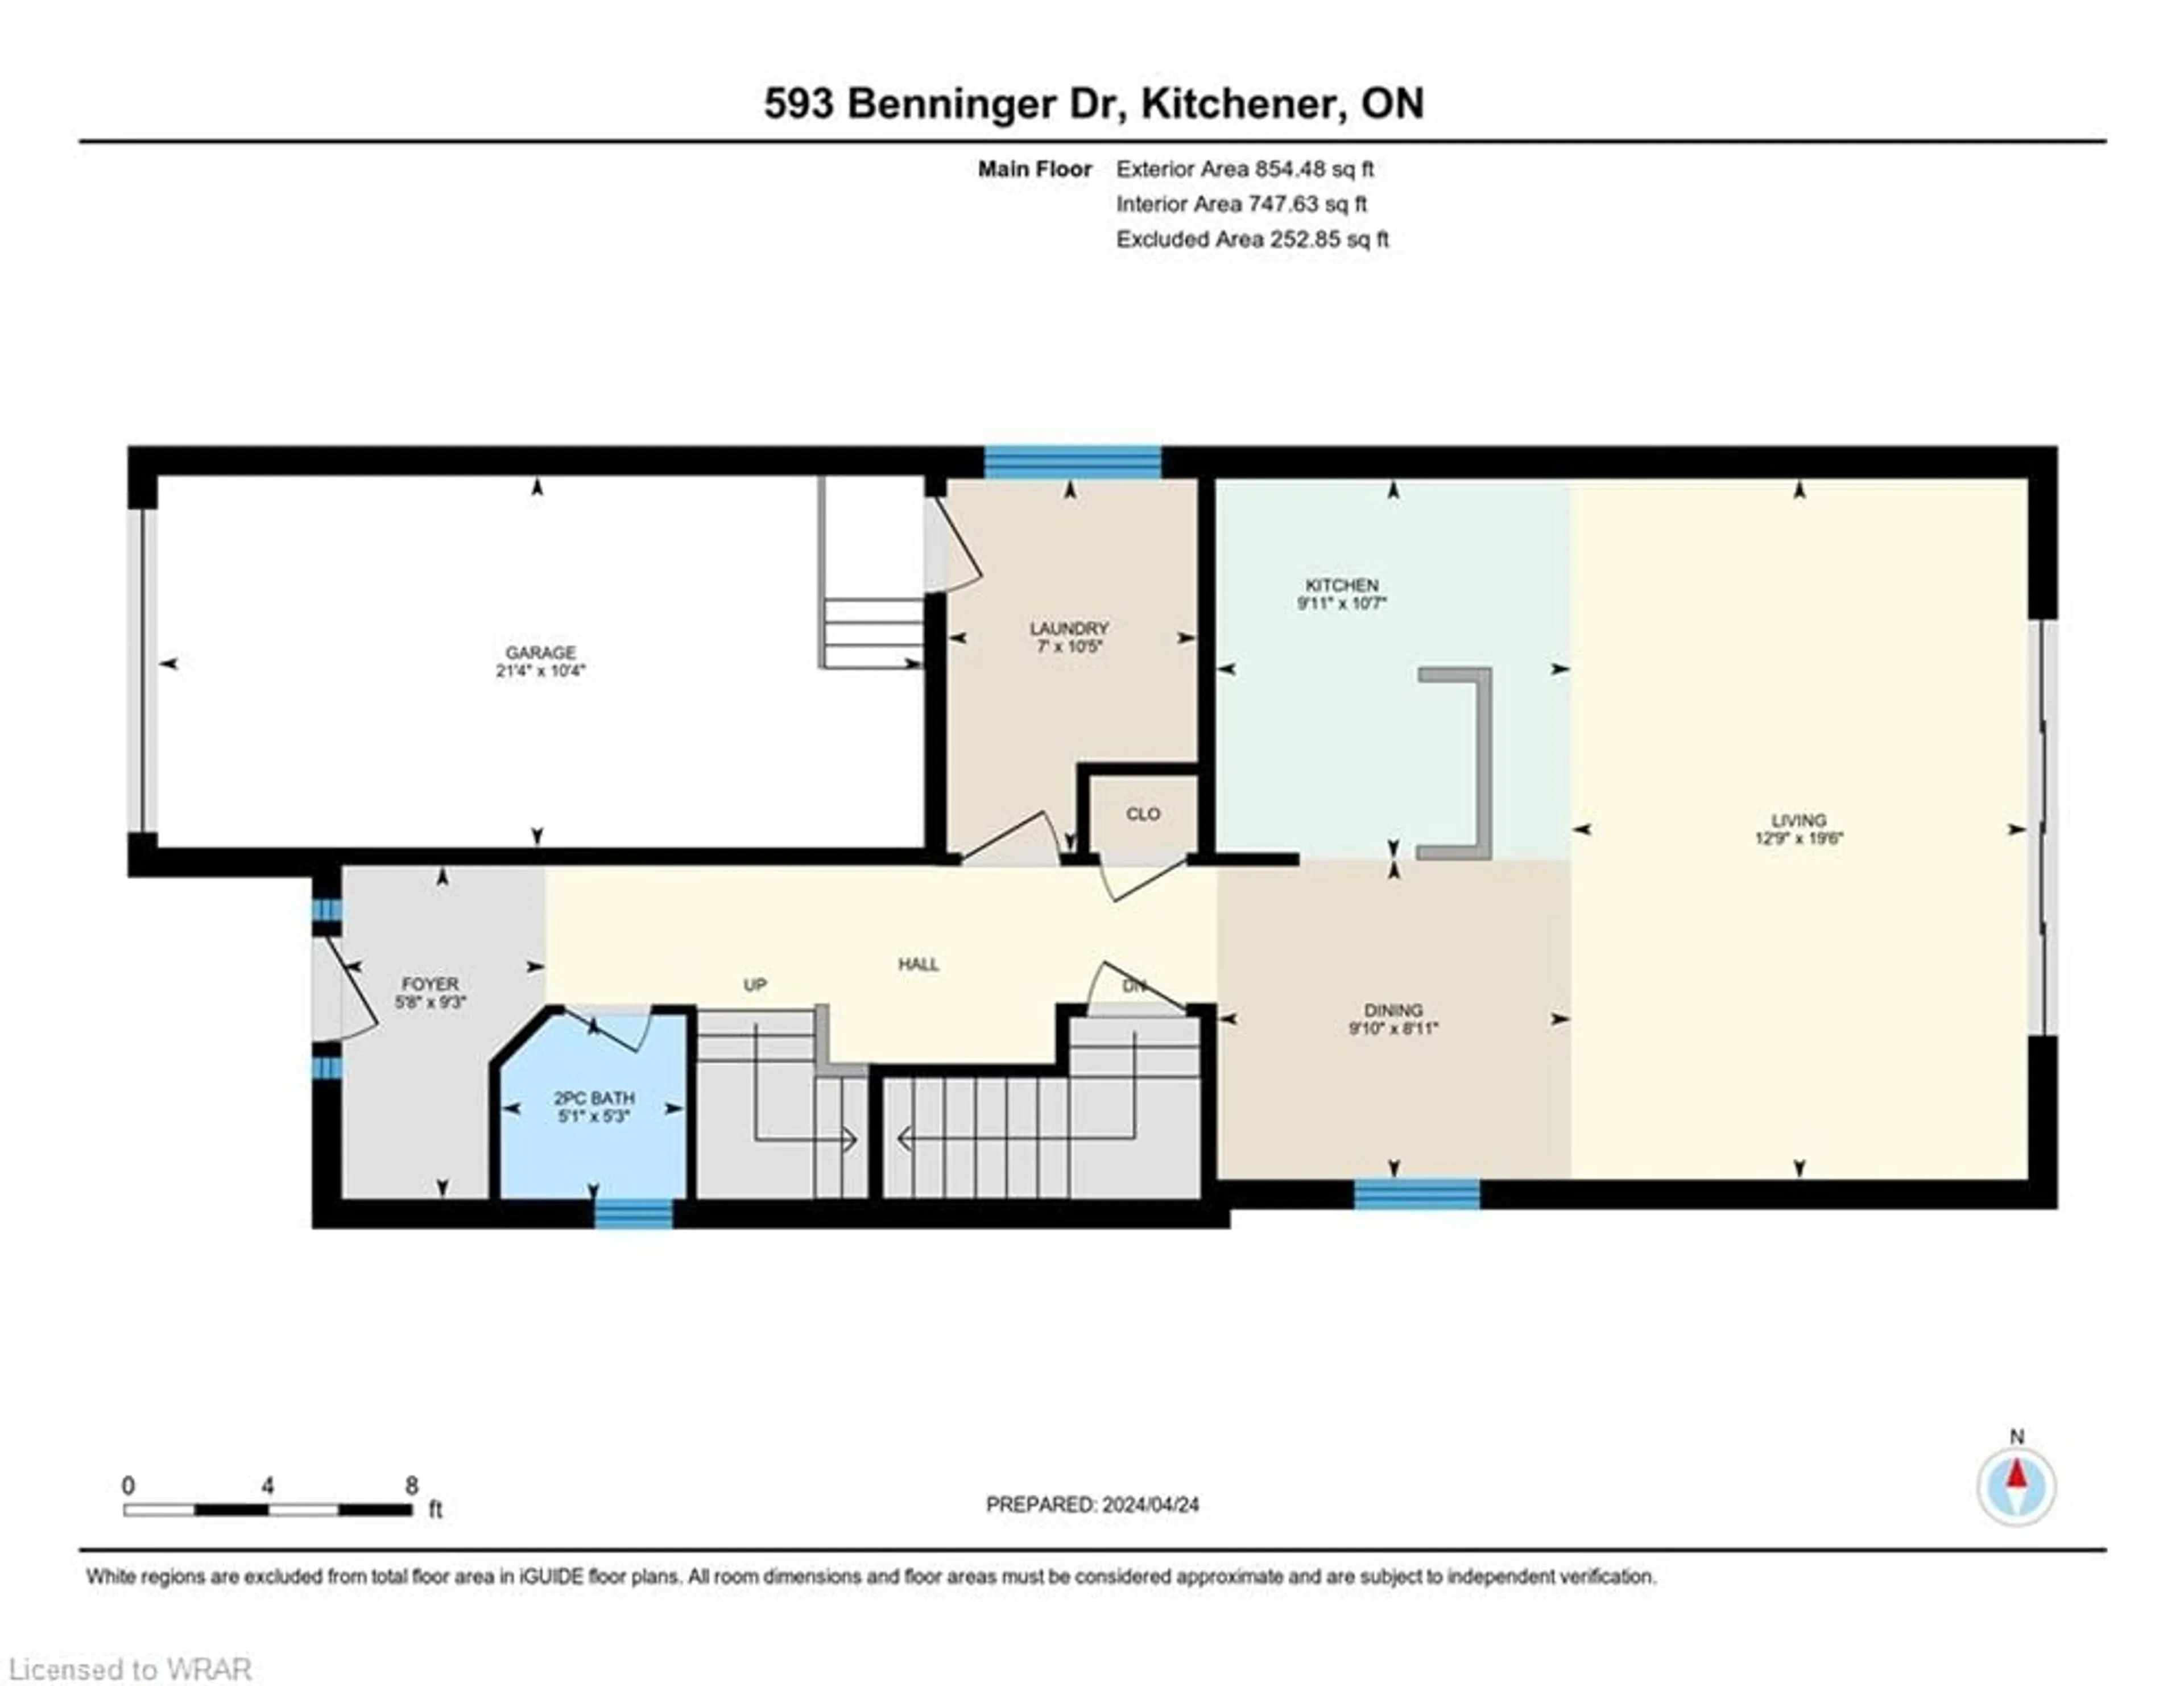 Floor plan for 593 Benninger Dr, Kitchener Ontario N2E 0C9